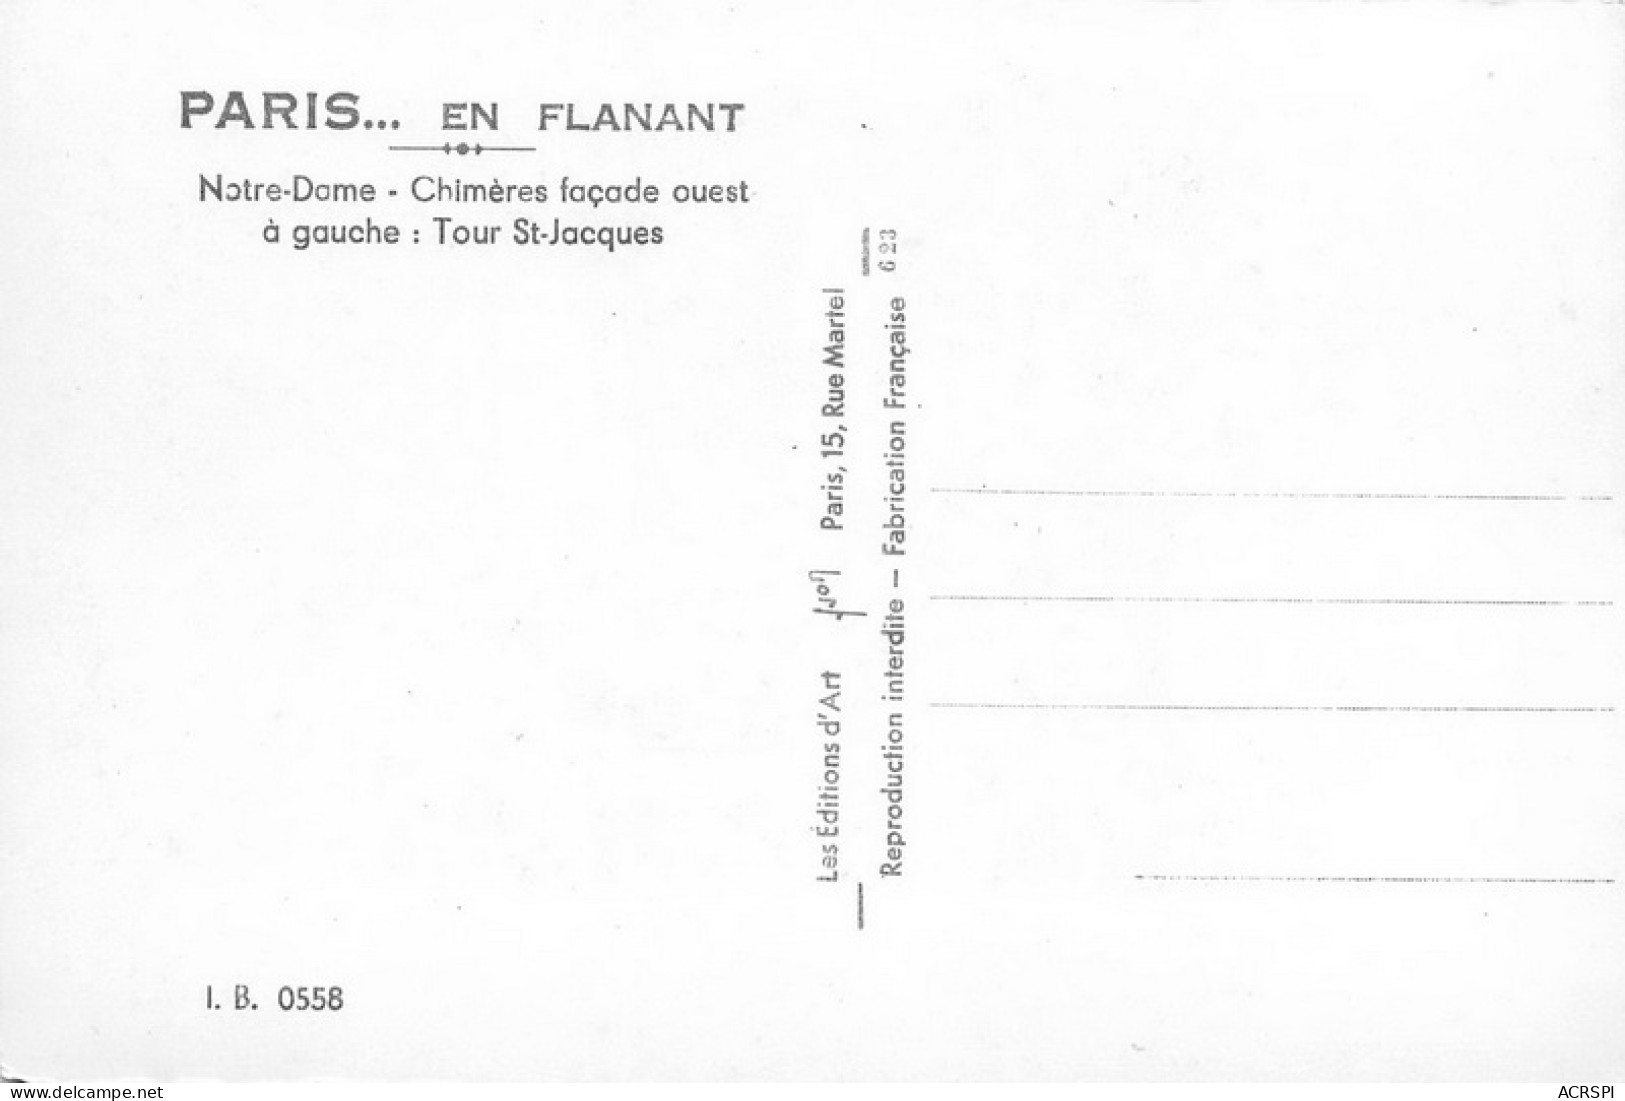 NOTRE DAME DE PARIS  Viollet-le-Duc Flèche Cathédrale église Christ Religion - Notre Dame De Paris